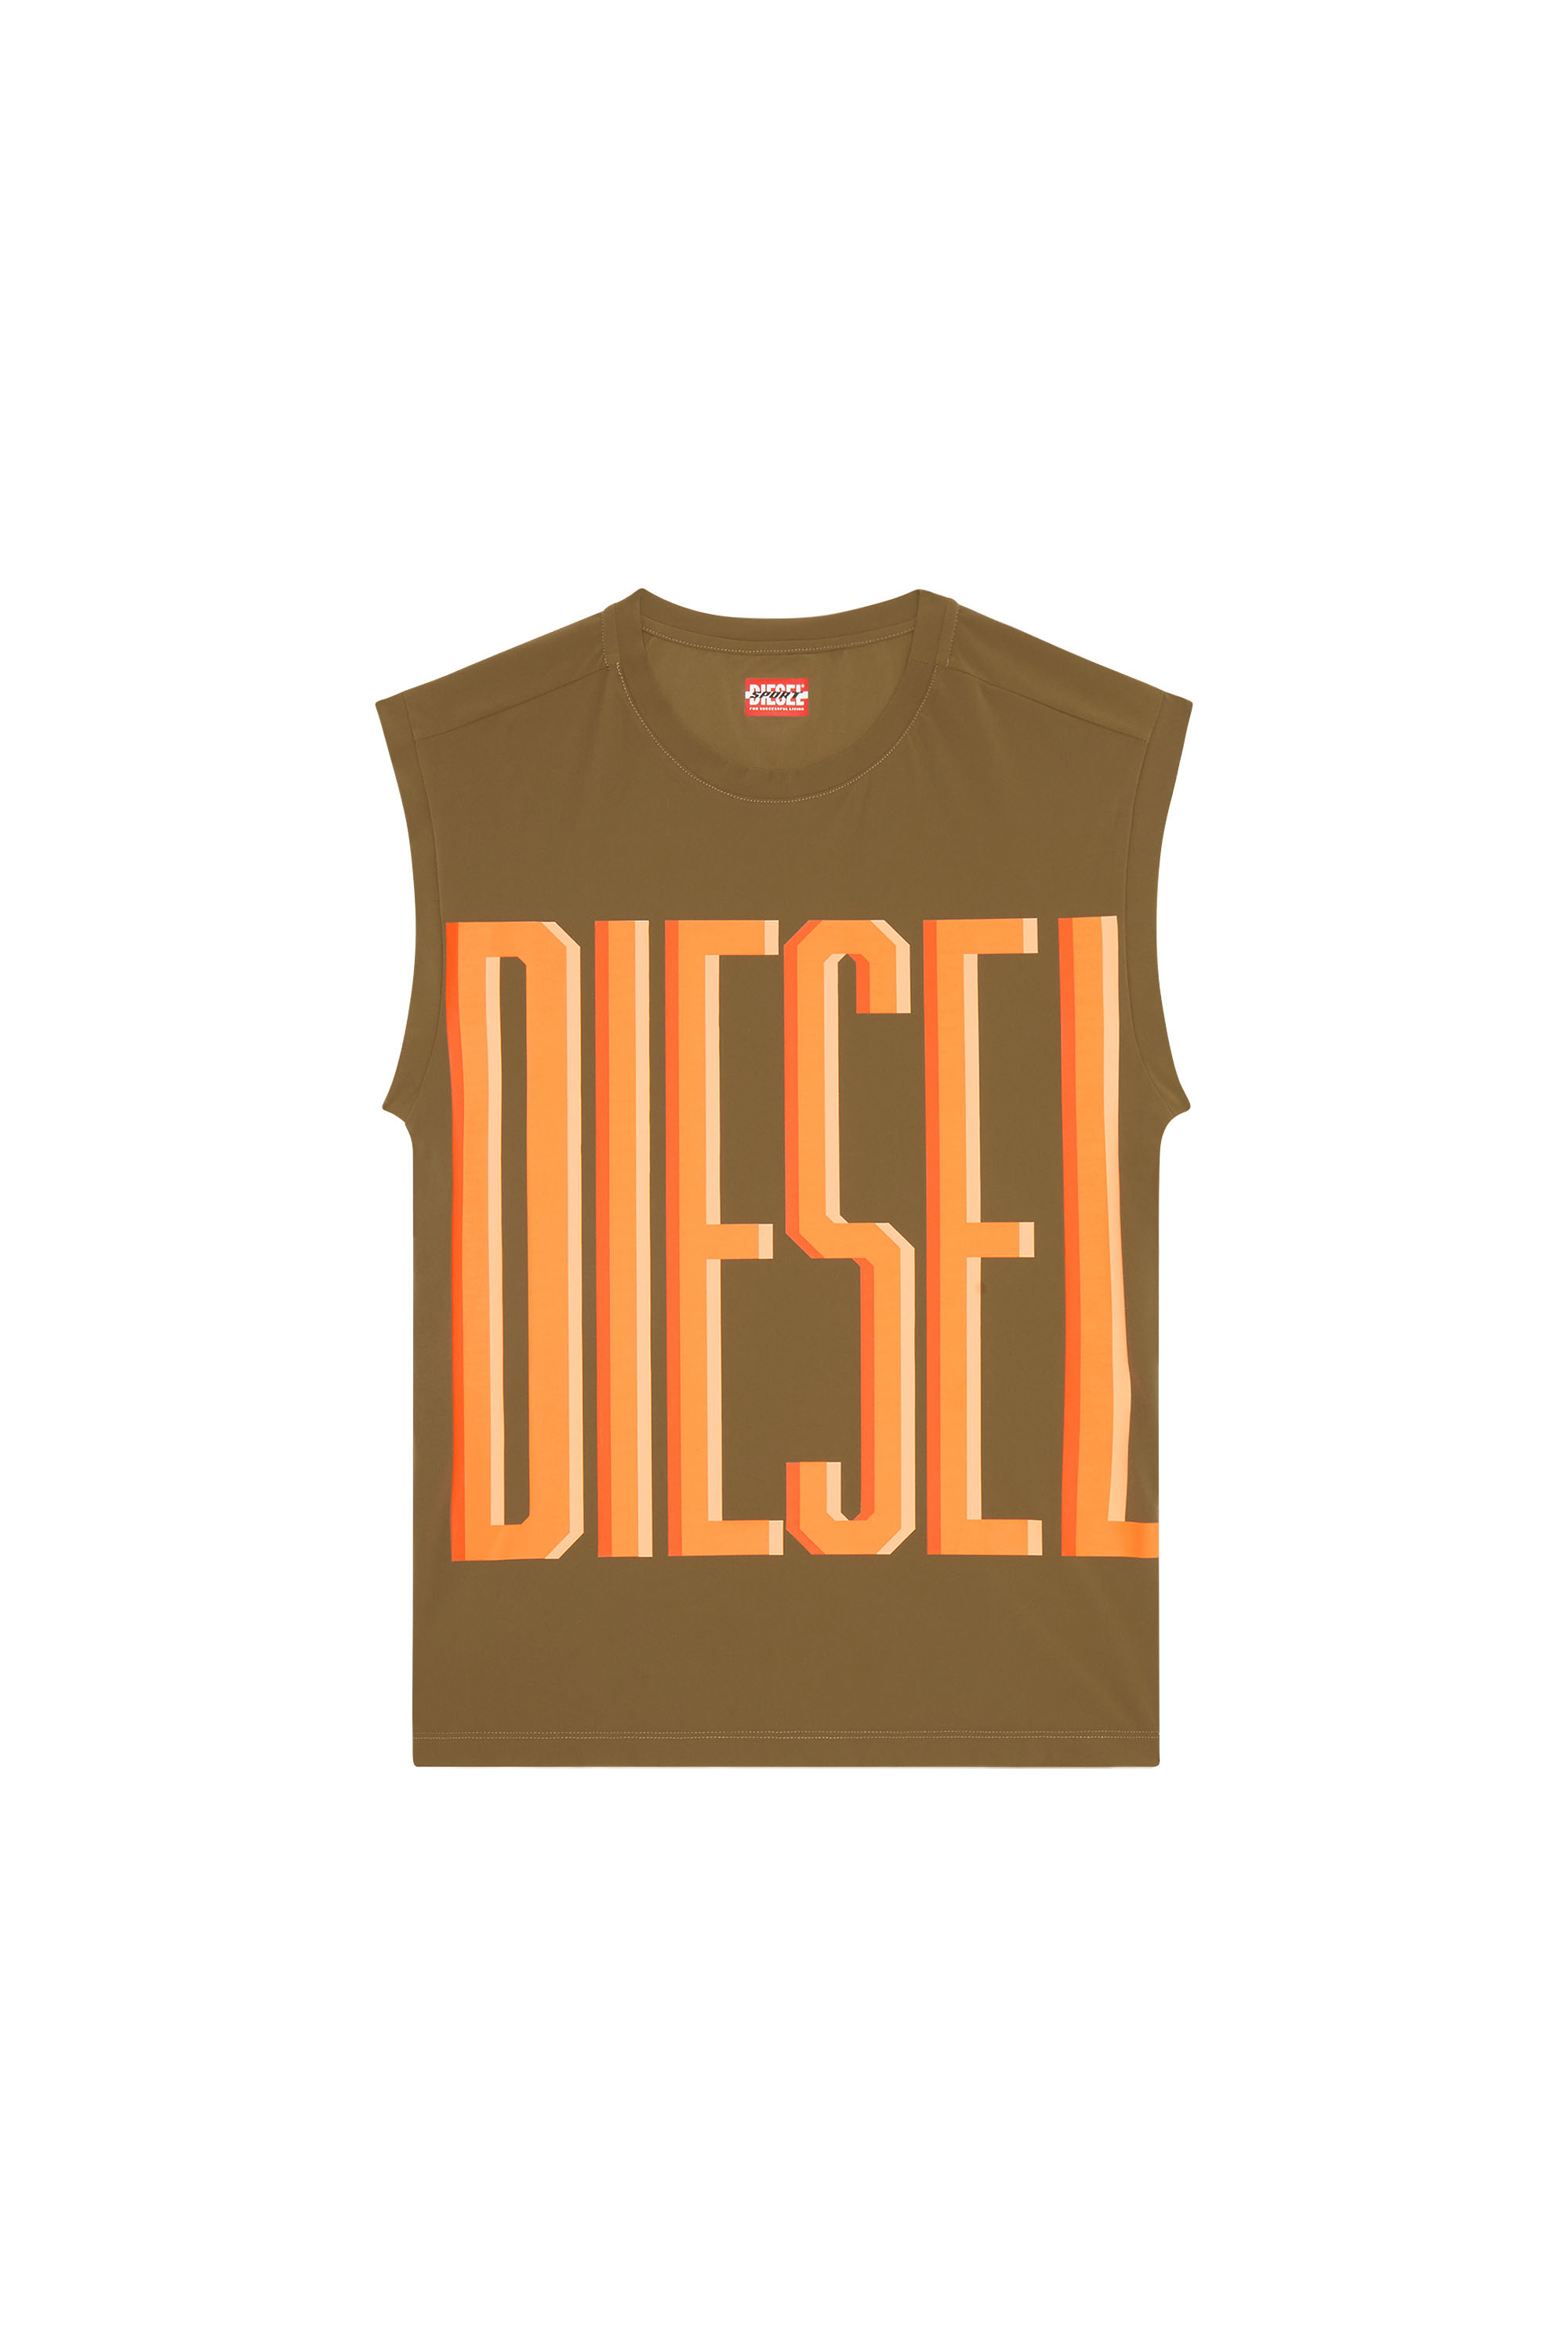 Diesel - AMST-RIDGE-WT40, Brown - Image 3